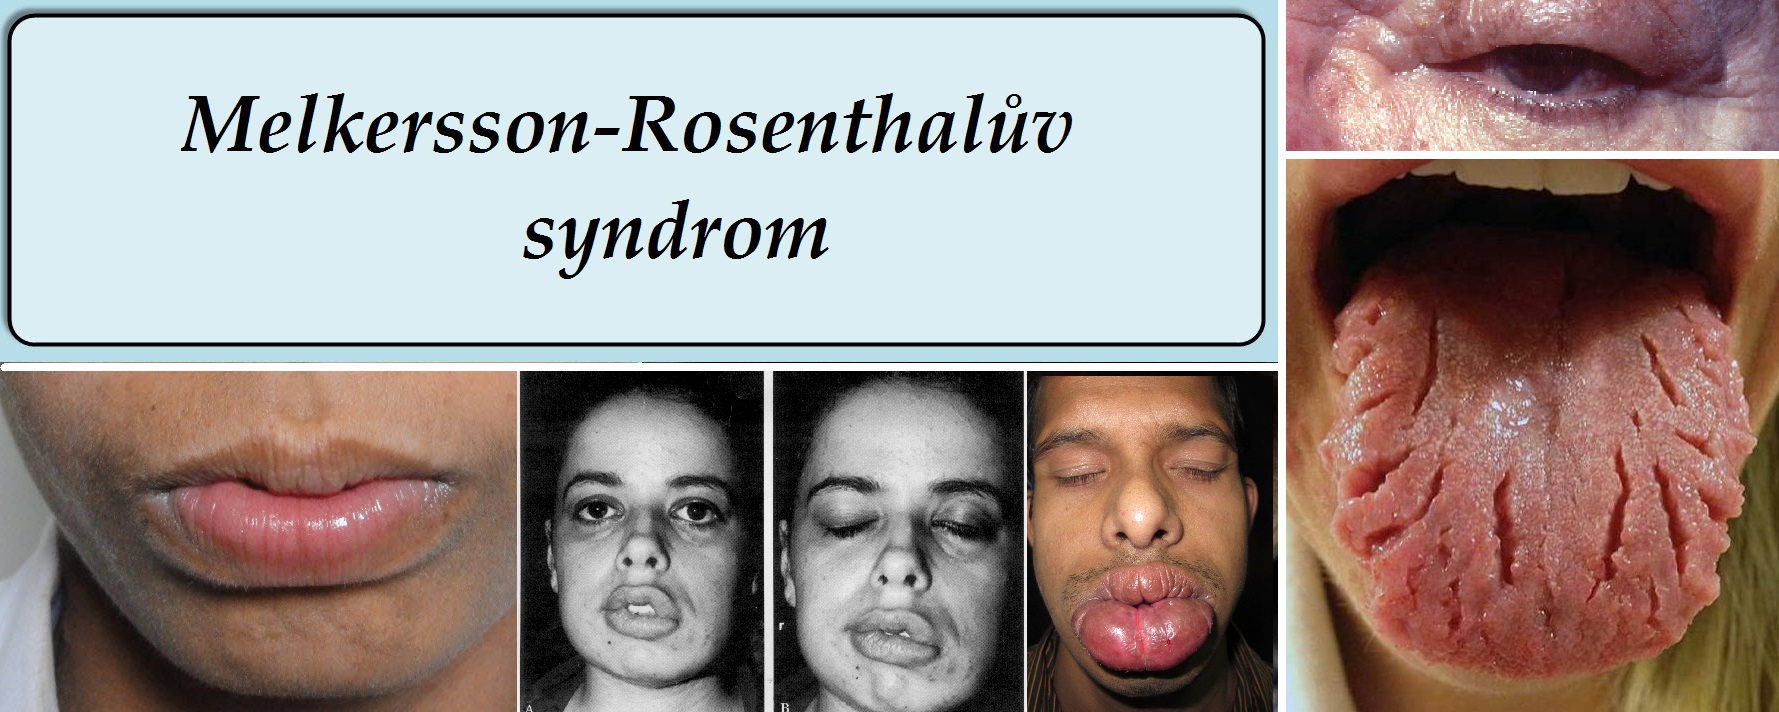 melkersson rosenthaluv syndrom priznaky projevy symptomy pricina lecba